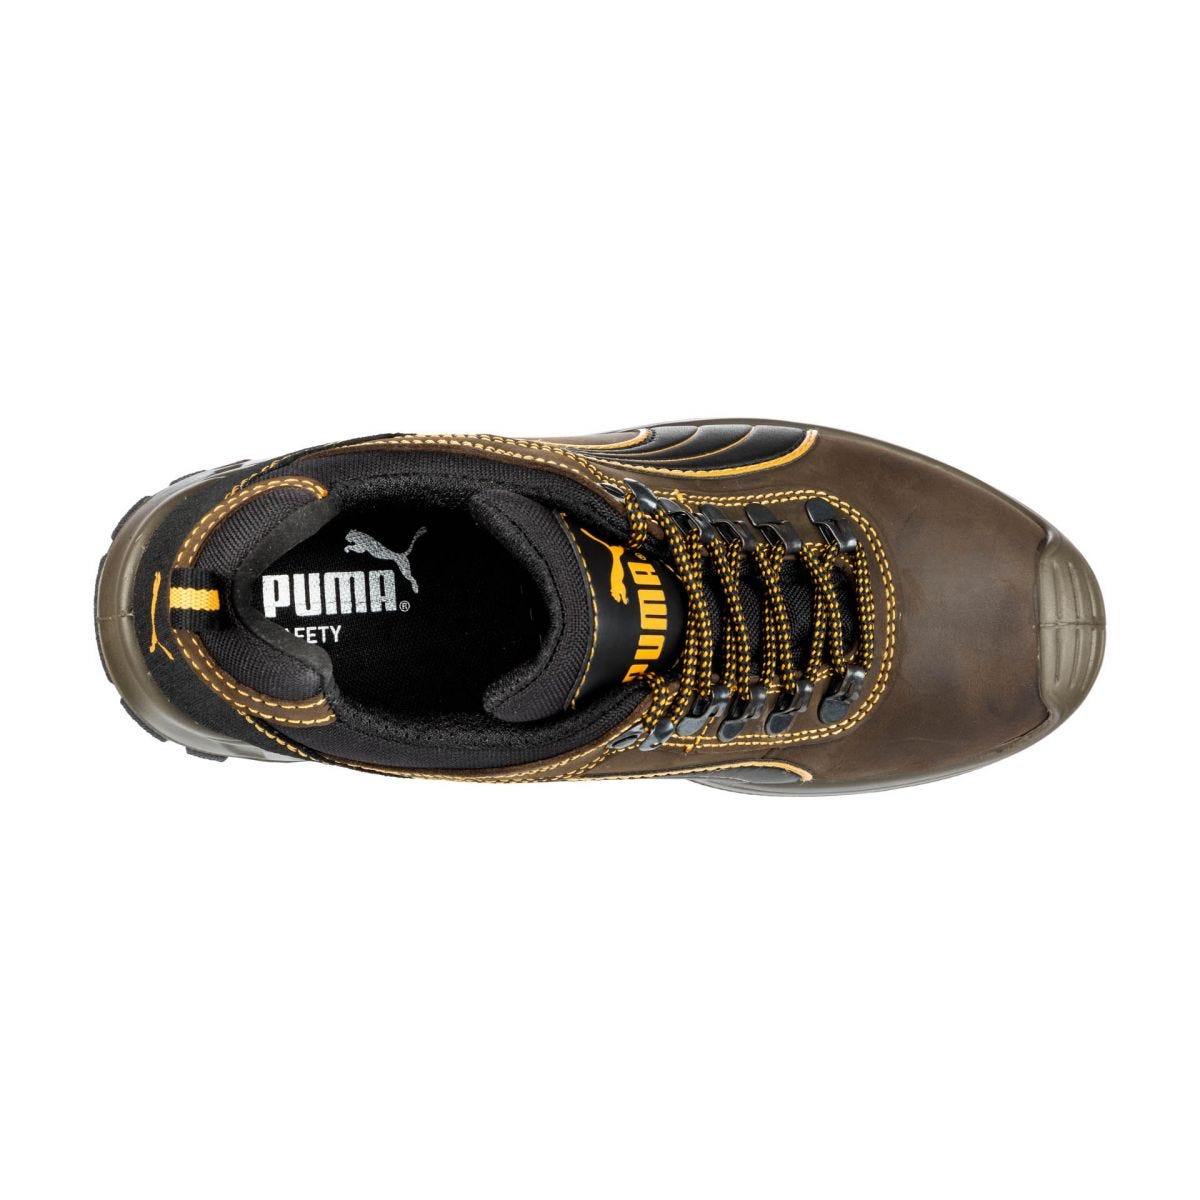 Chaussures de sécurité Sierra Nevada low S3 HRO SRC - Puma - Taille 43 2